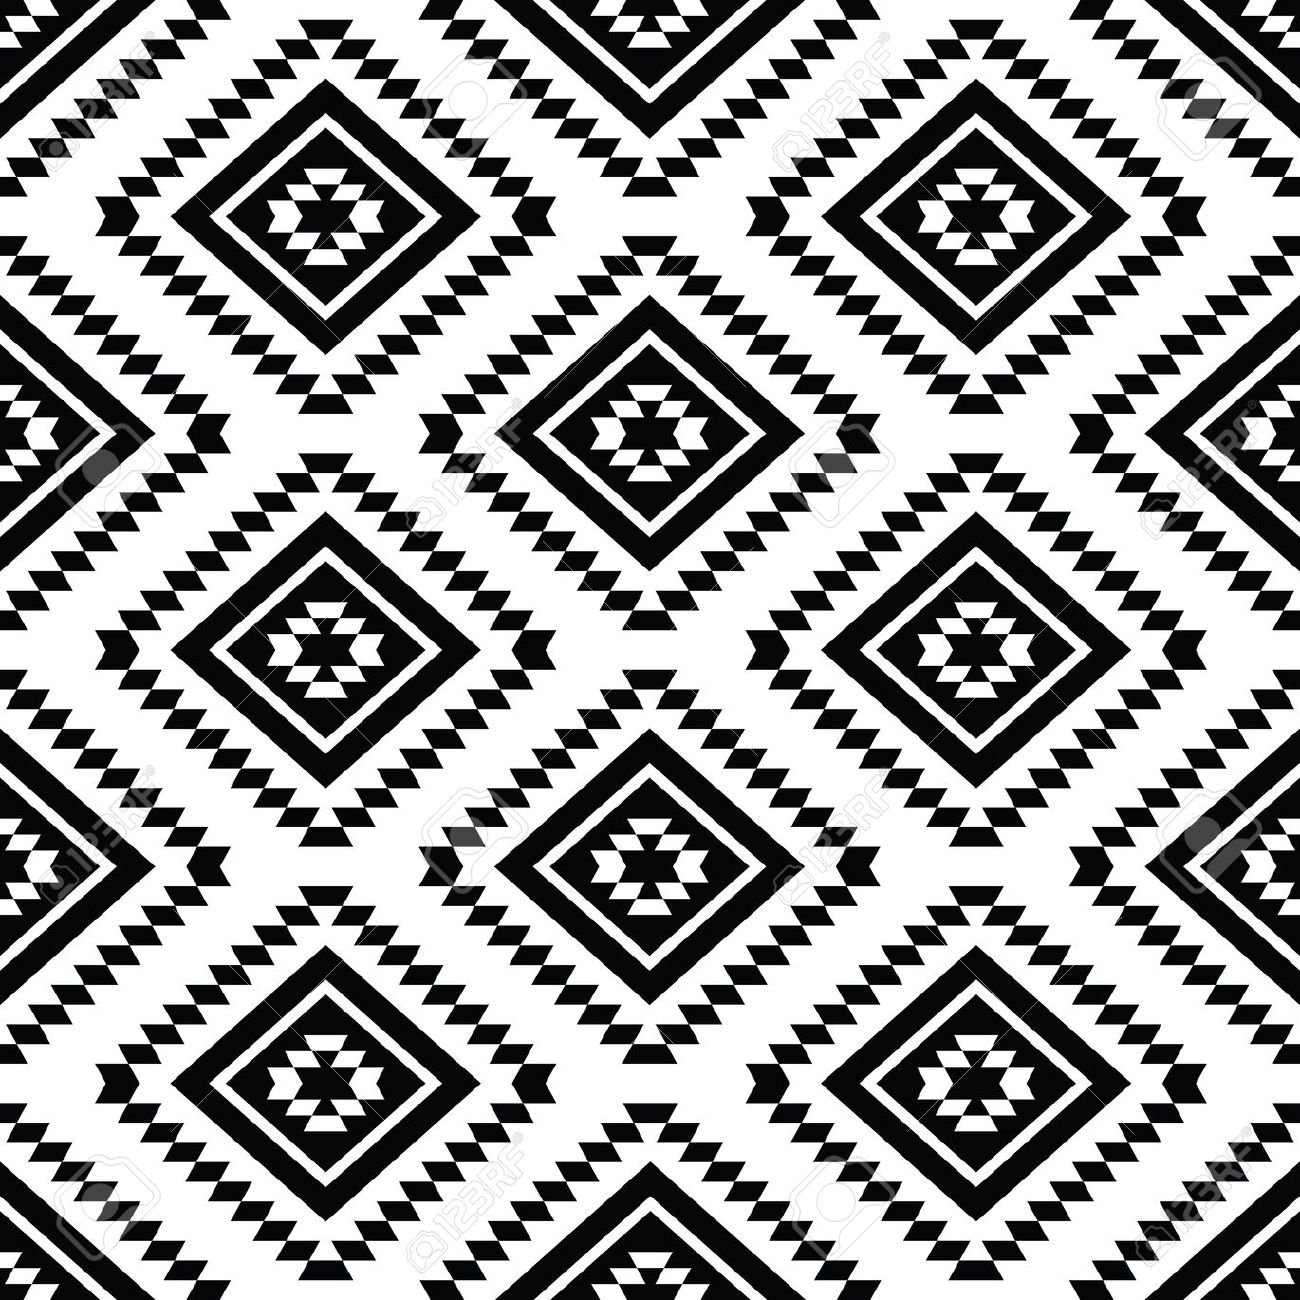 27+ Best Aztec Patterns, Wallpapers | Design Trends ...